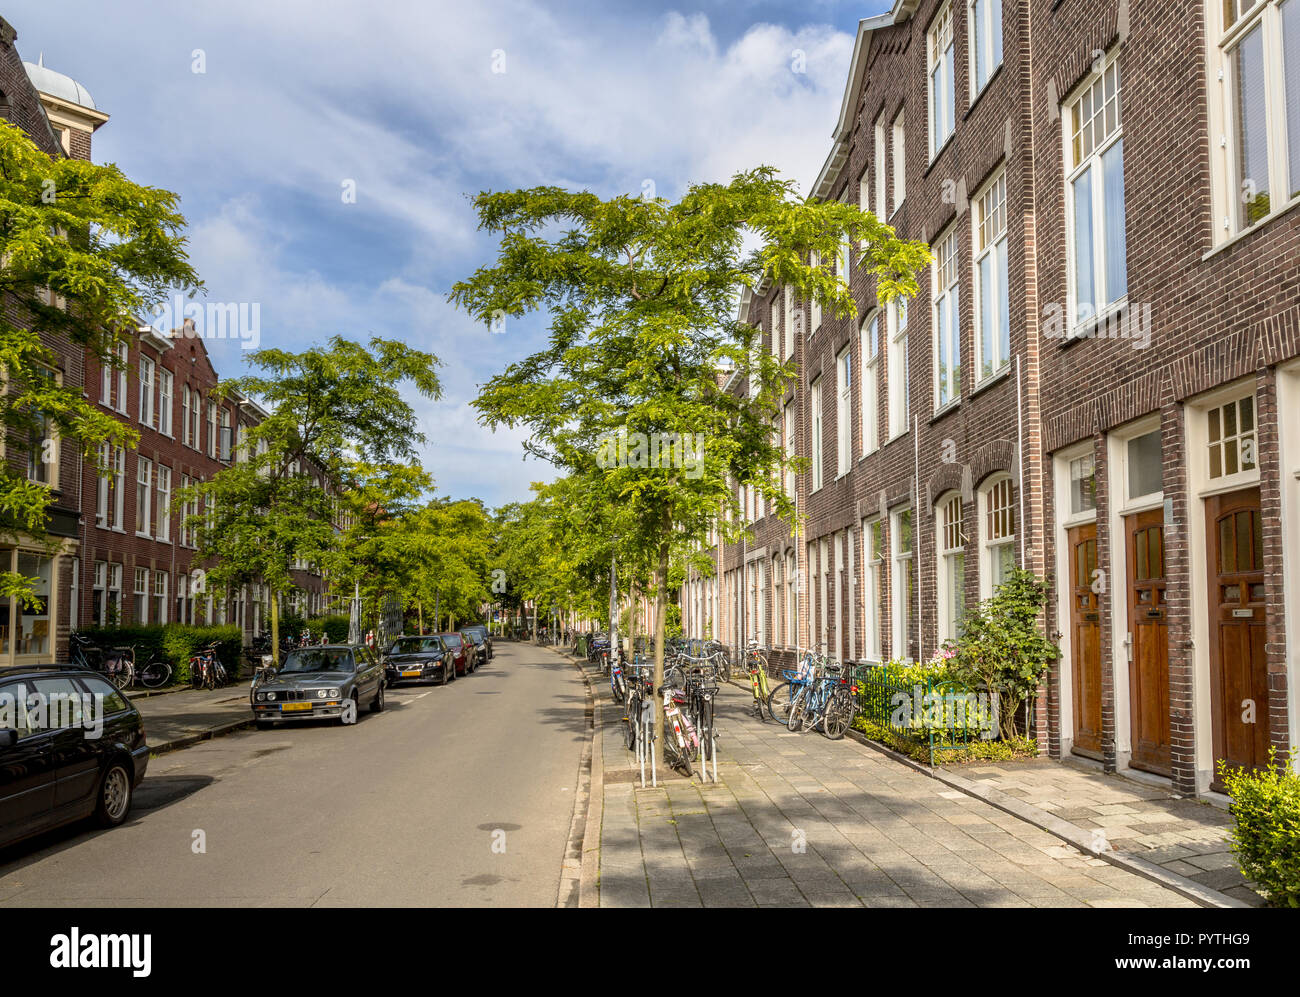 Cityscape of Dutch bâtiments historiques de rue avec maisons anciennes datant de 1910 à groningen Pays-Bas Banque D'Images